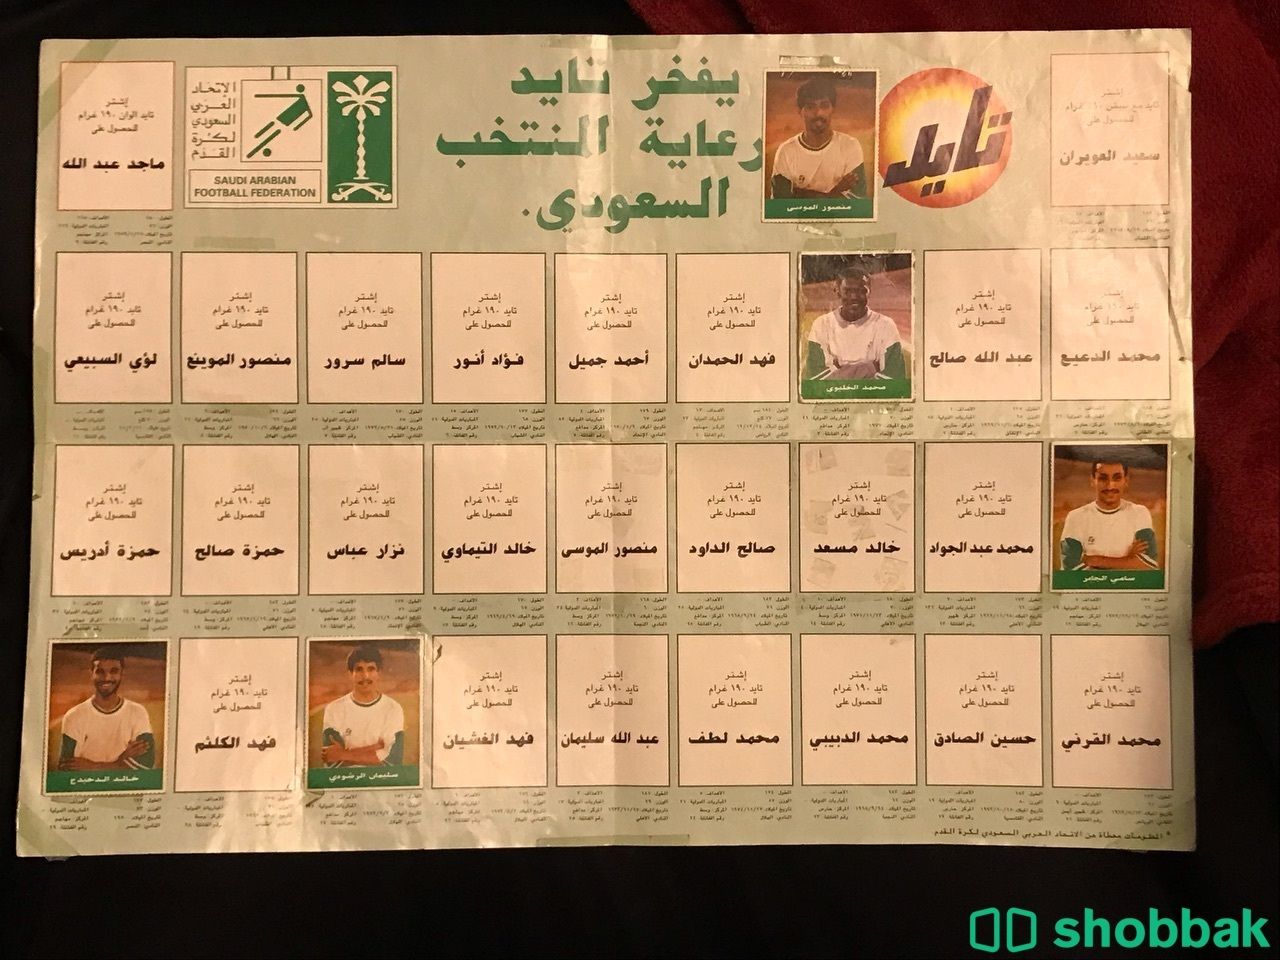 لوحة دعم المنتخب السعودي في كأس العالم عام 94 شباك السعودية